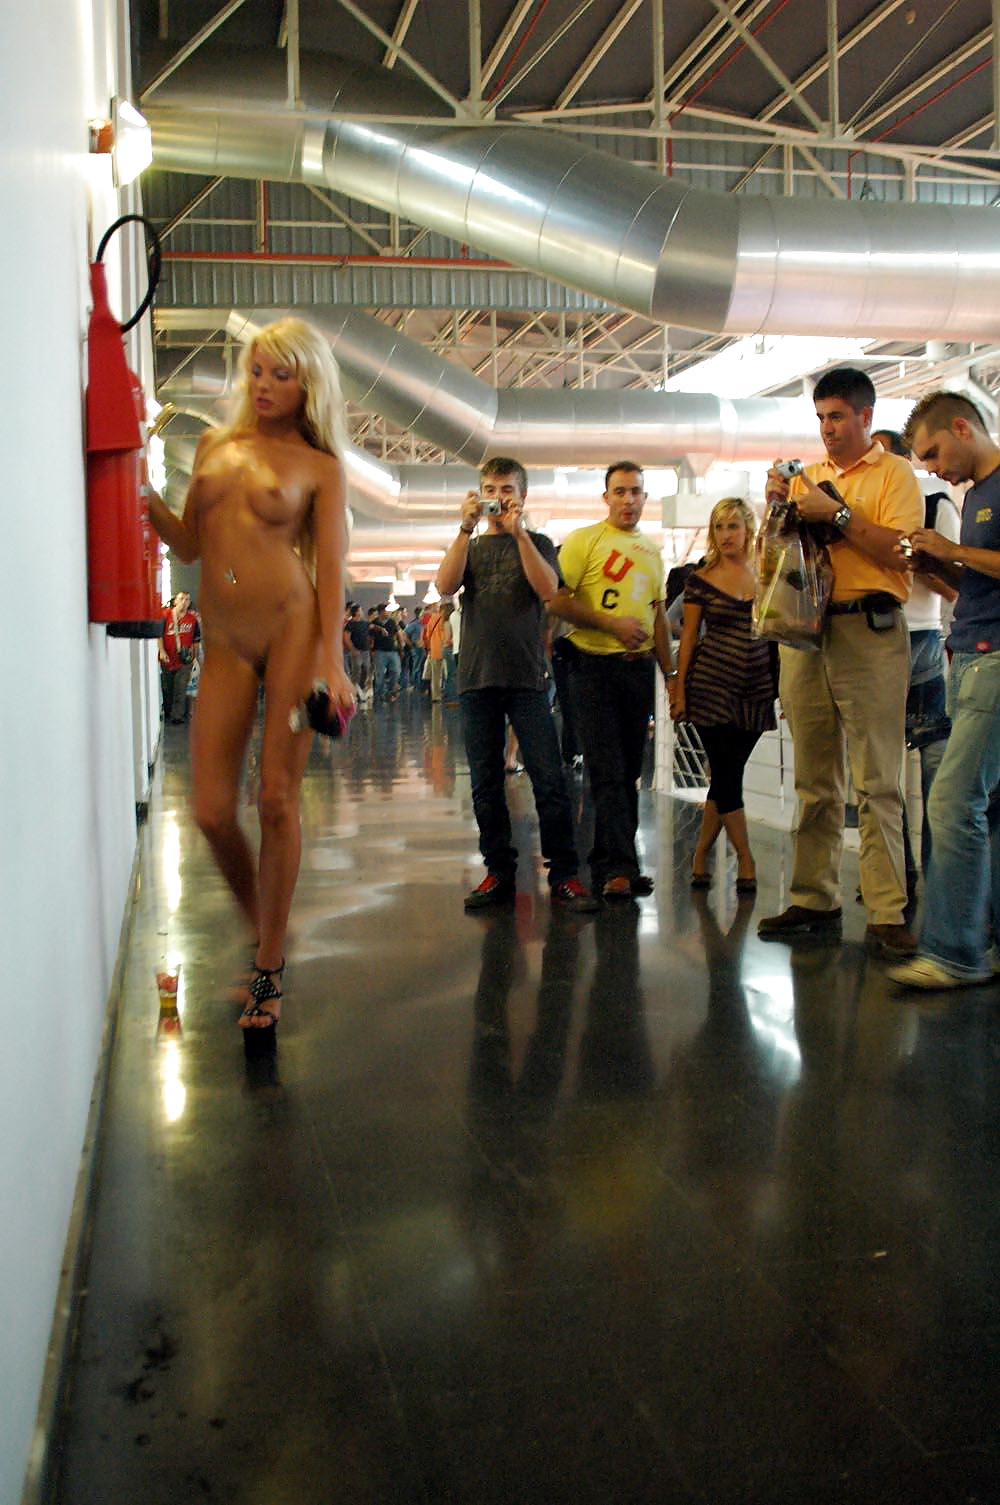 Ragazze nude in pubblico #2
 #17424315